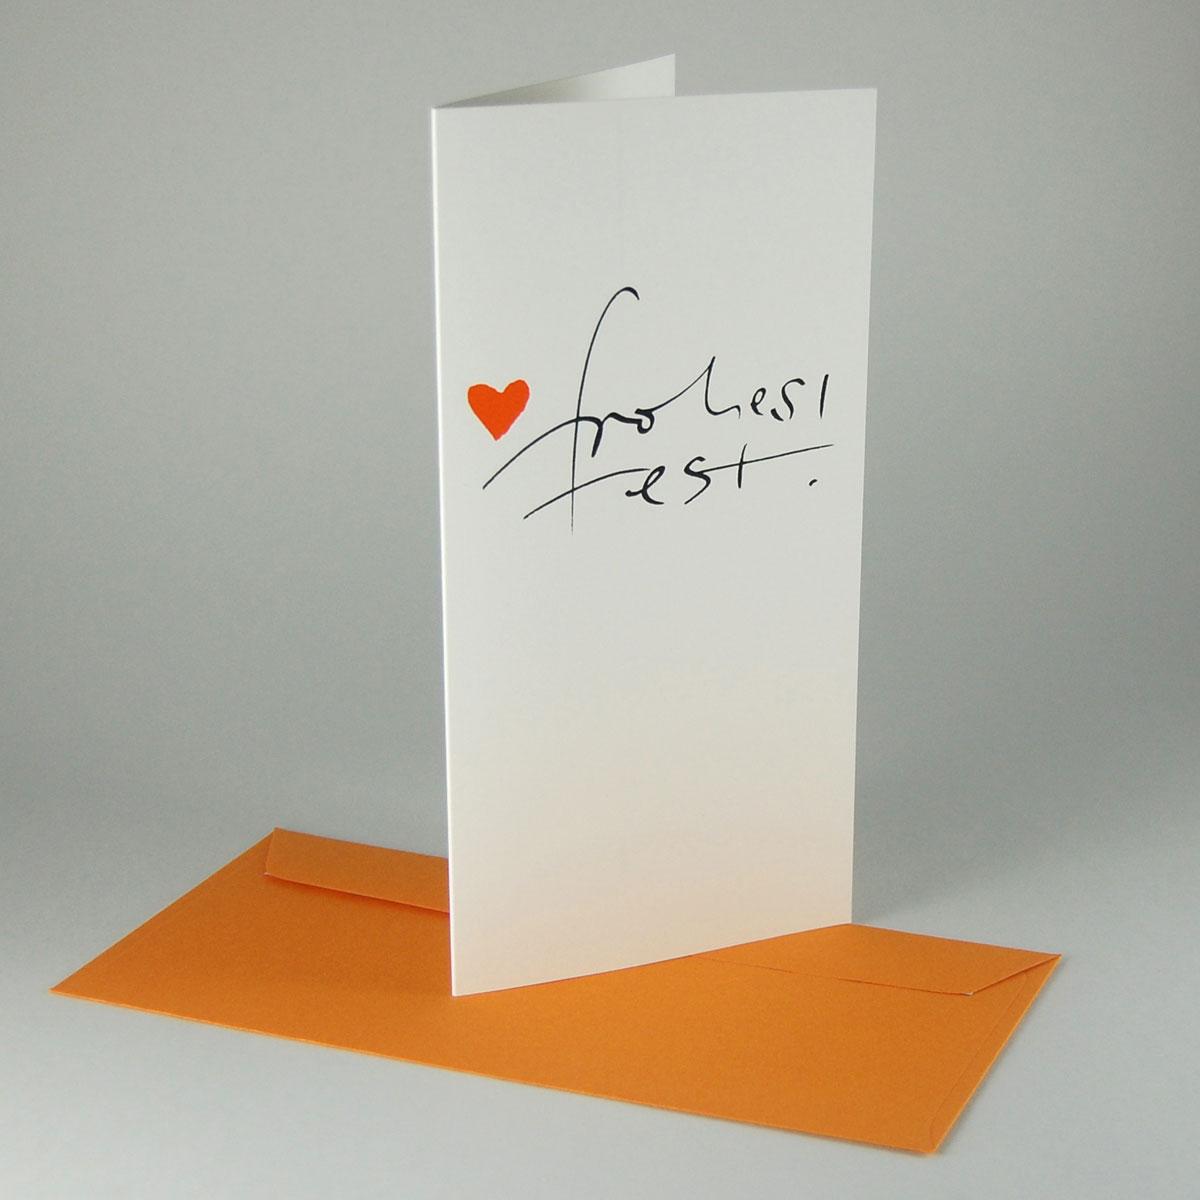 10 Weihnachtskarten mit orangen Kuverts: frohes fest!